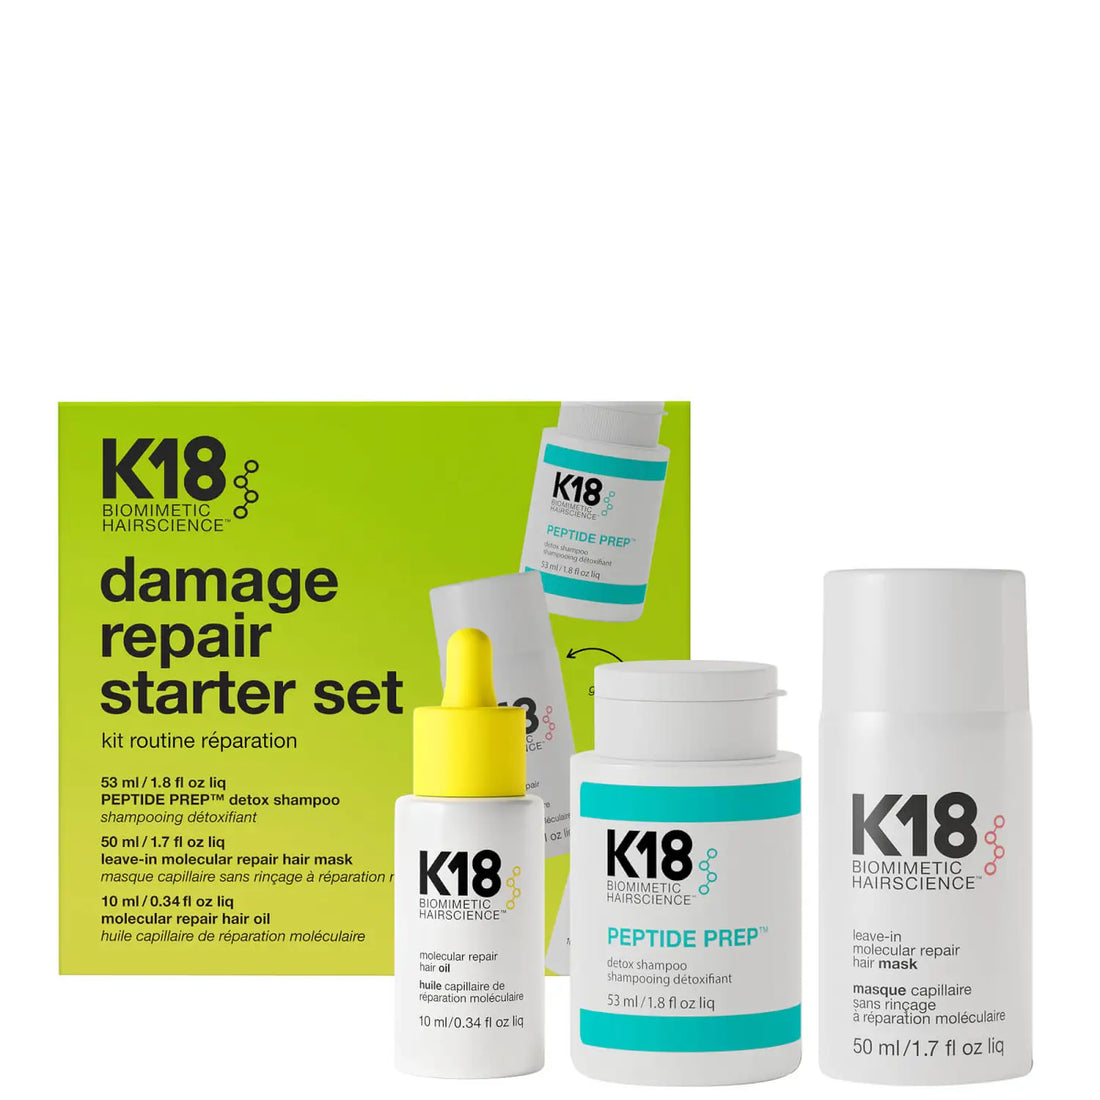 K18 Biomimetic Hairscience Damage Hair Care Repair Starter Set